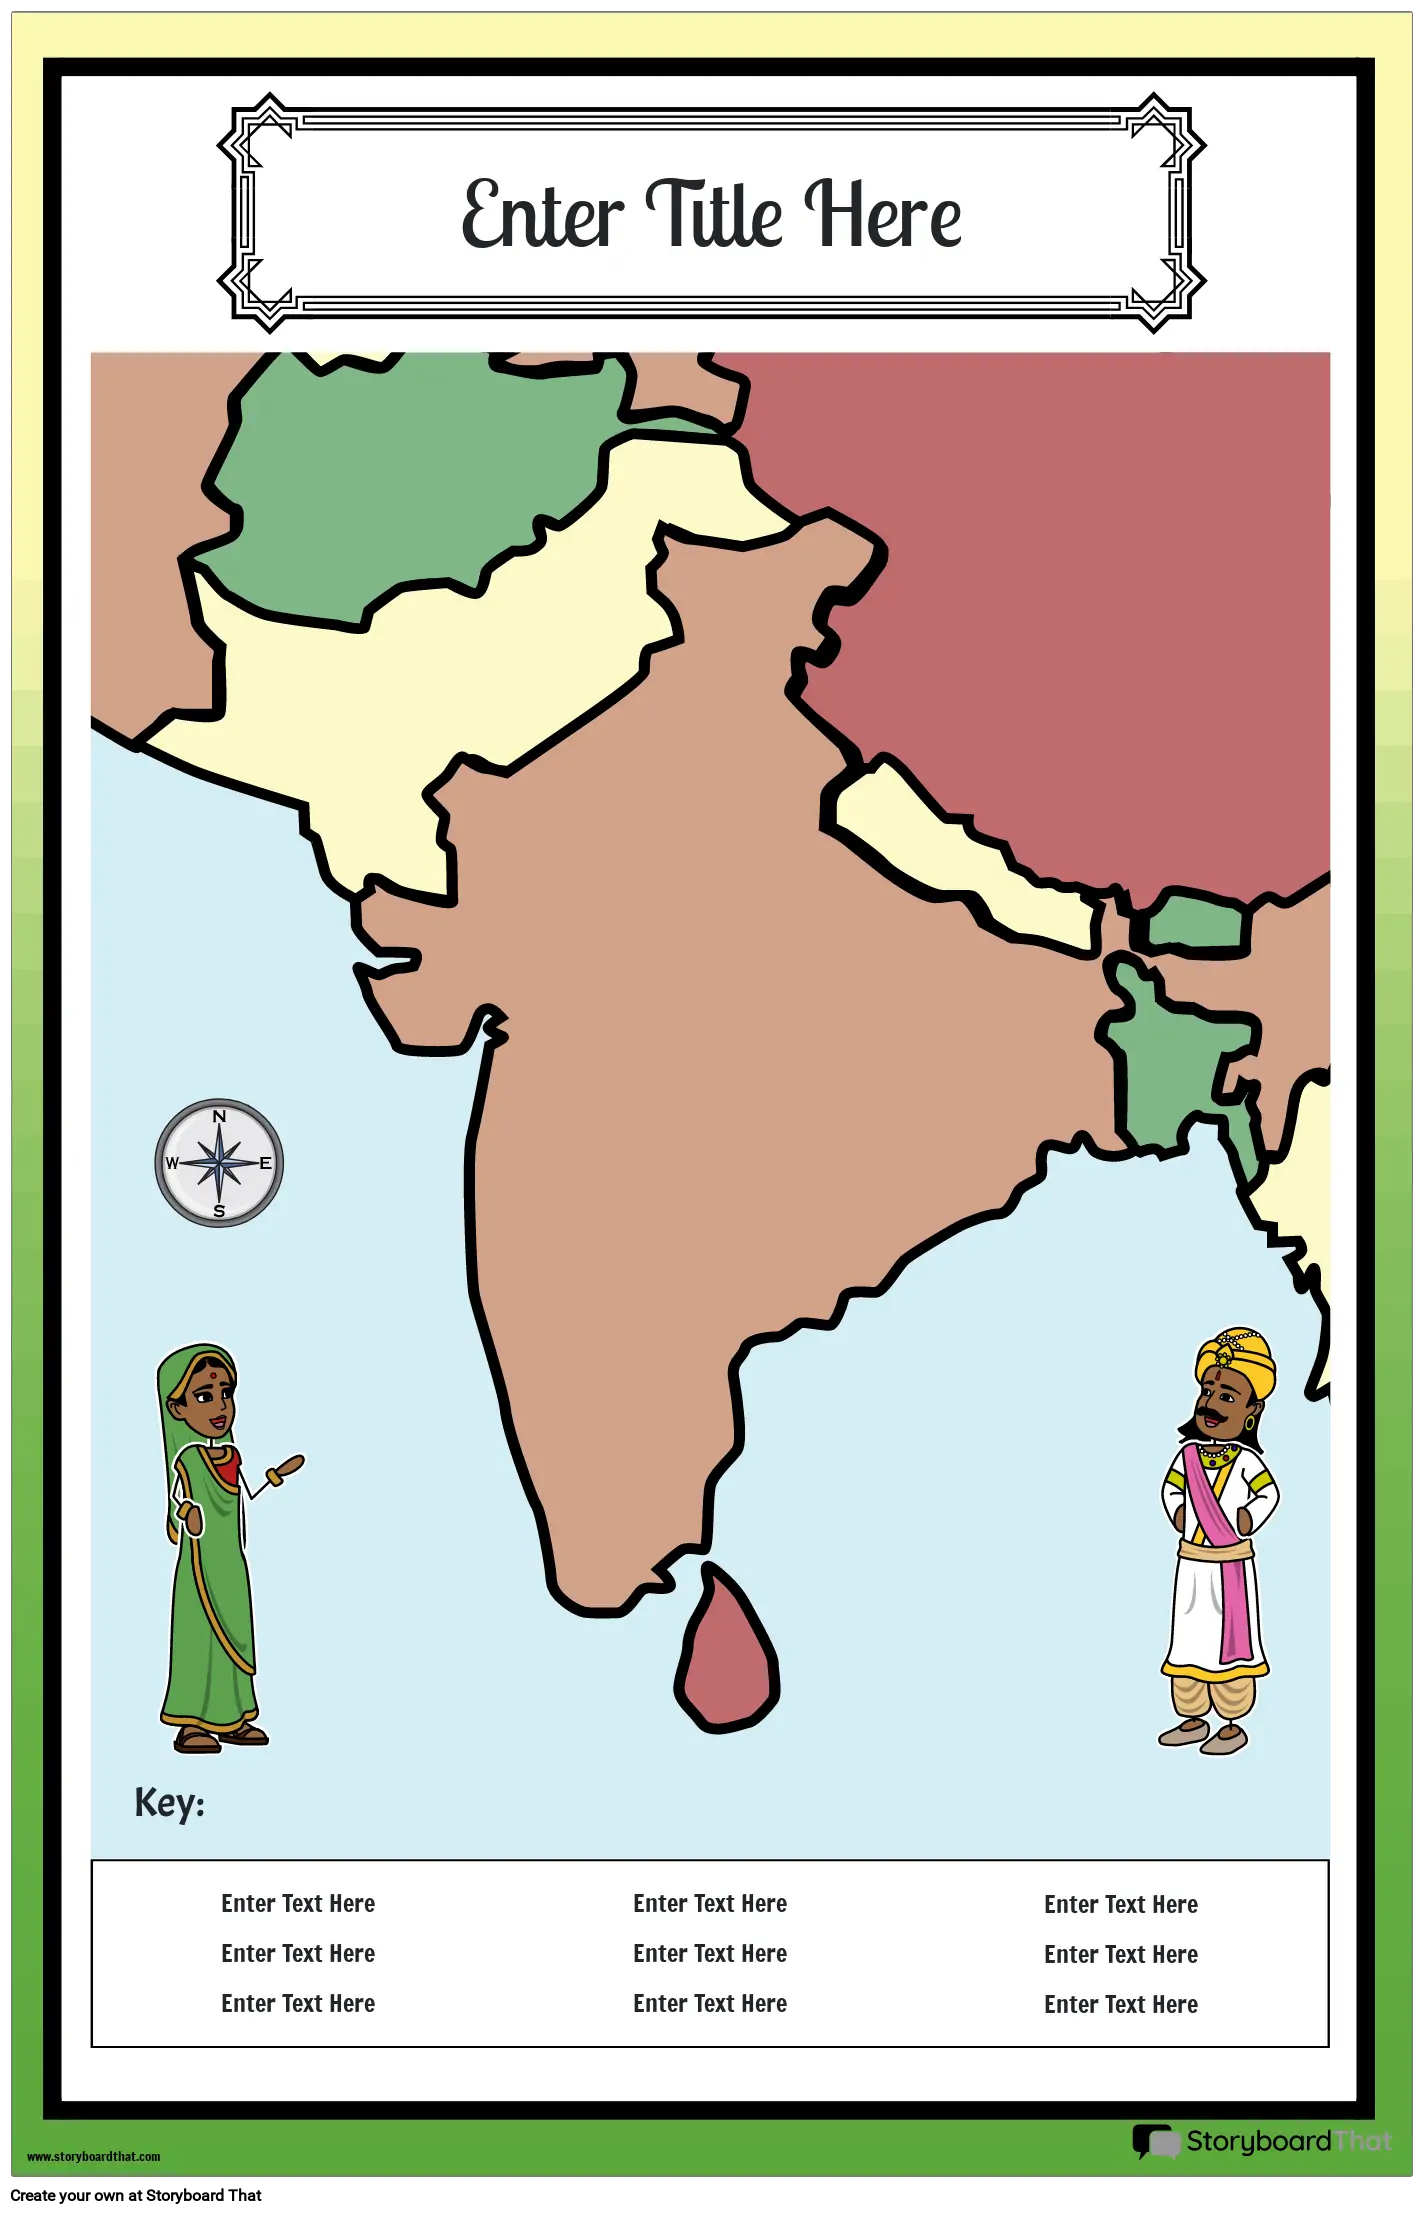 नक्शा पोस्टर 27 रंग पोर्ट्रेट प्राचीन भारत